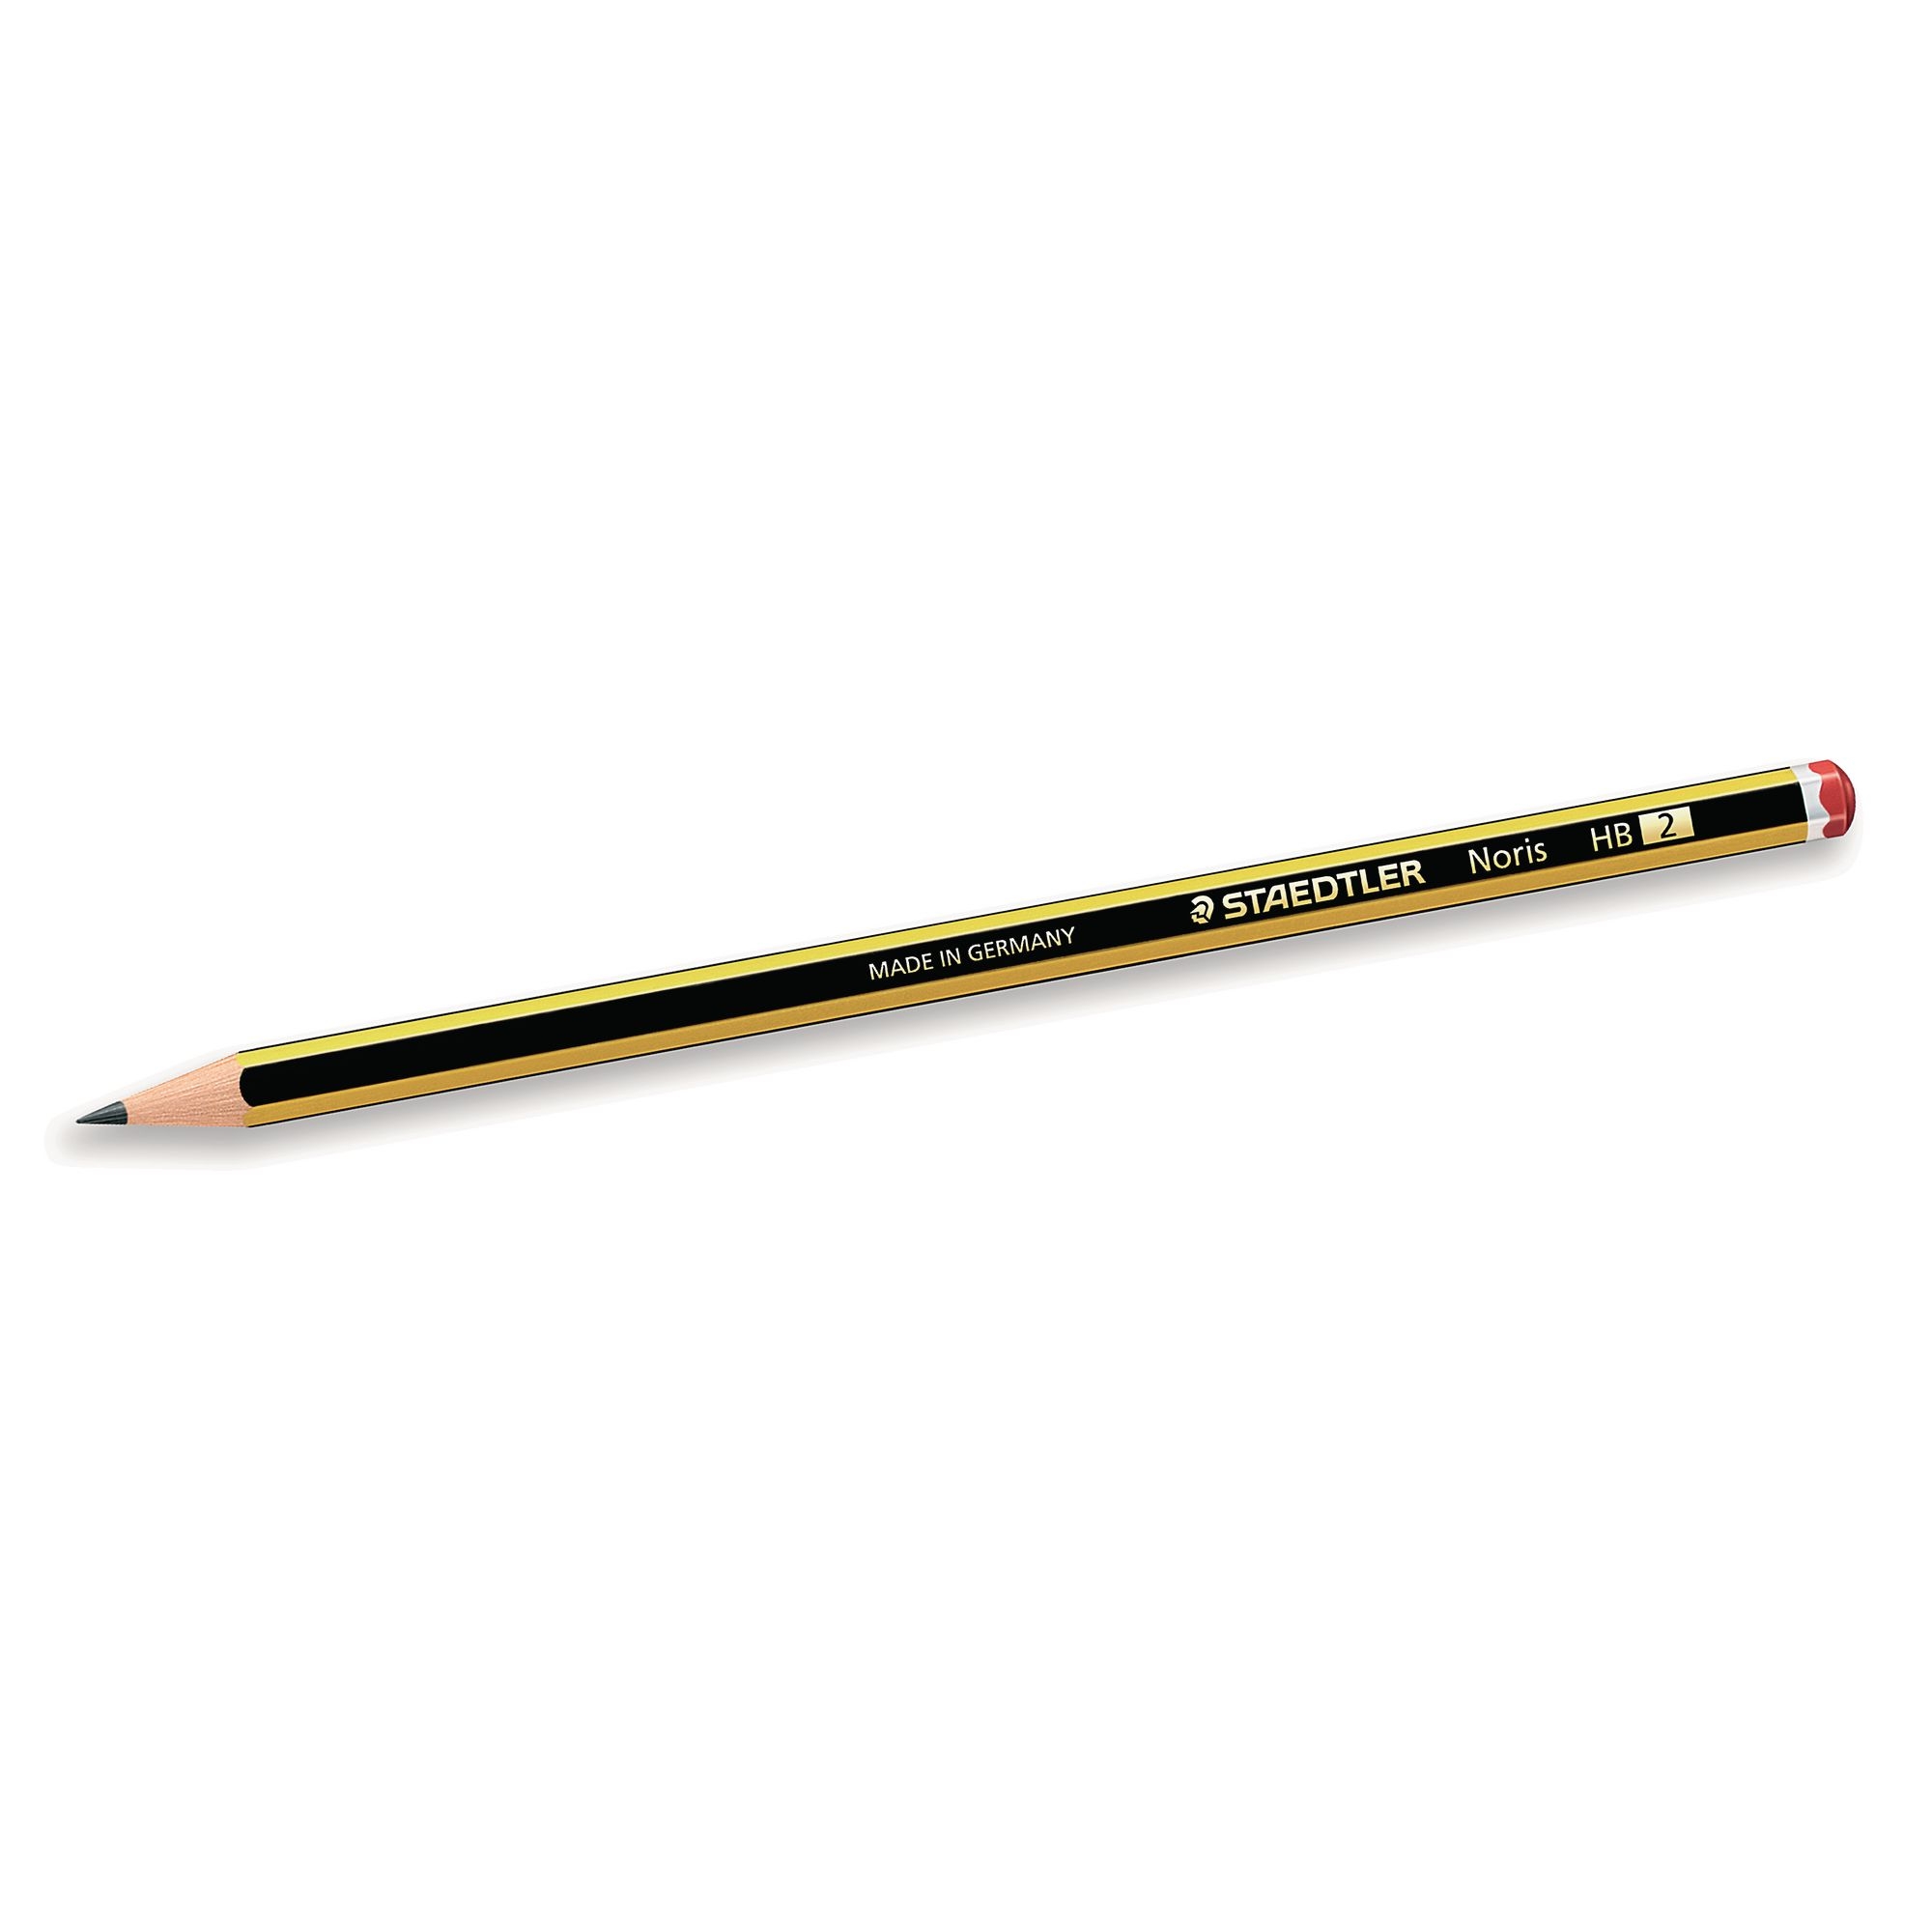 Staedtler Noris Pencils - HB - Pack of 1500